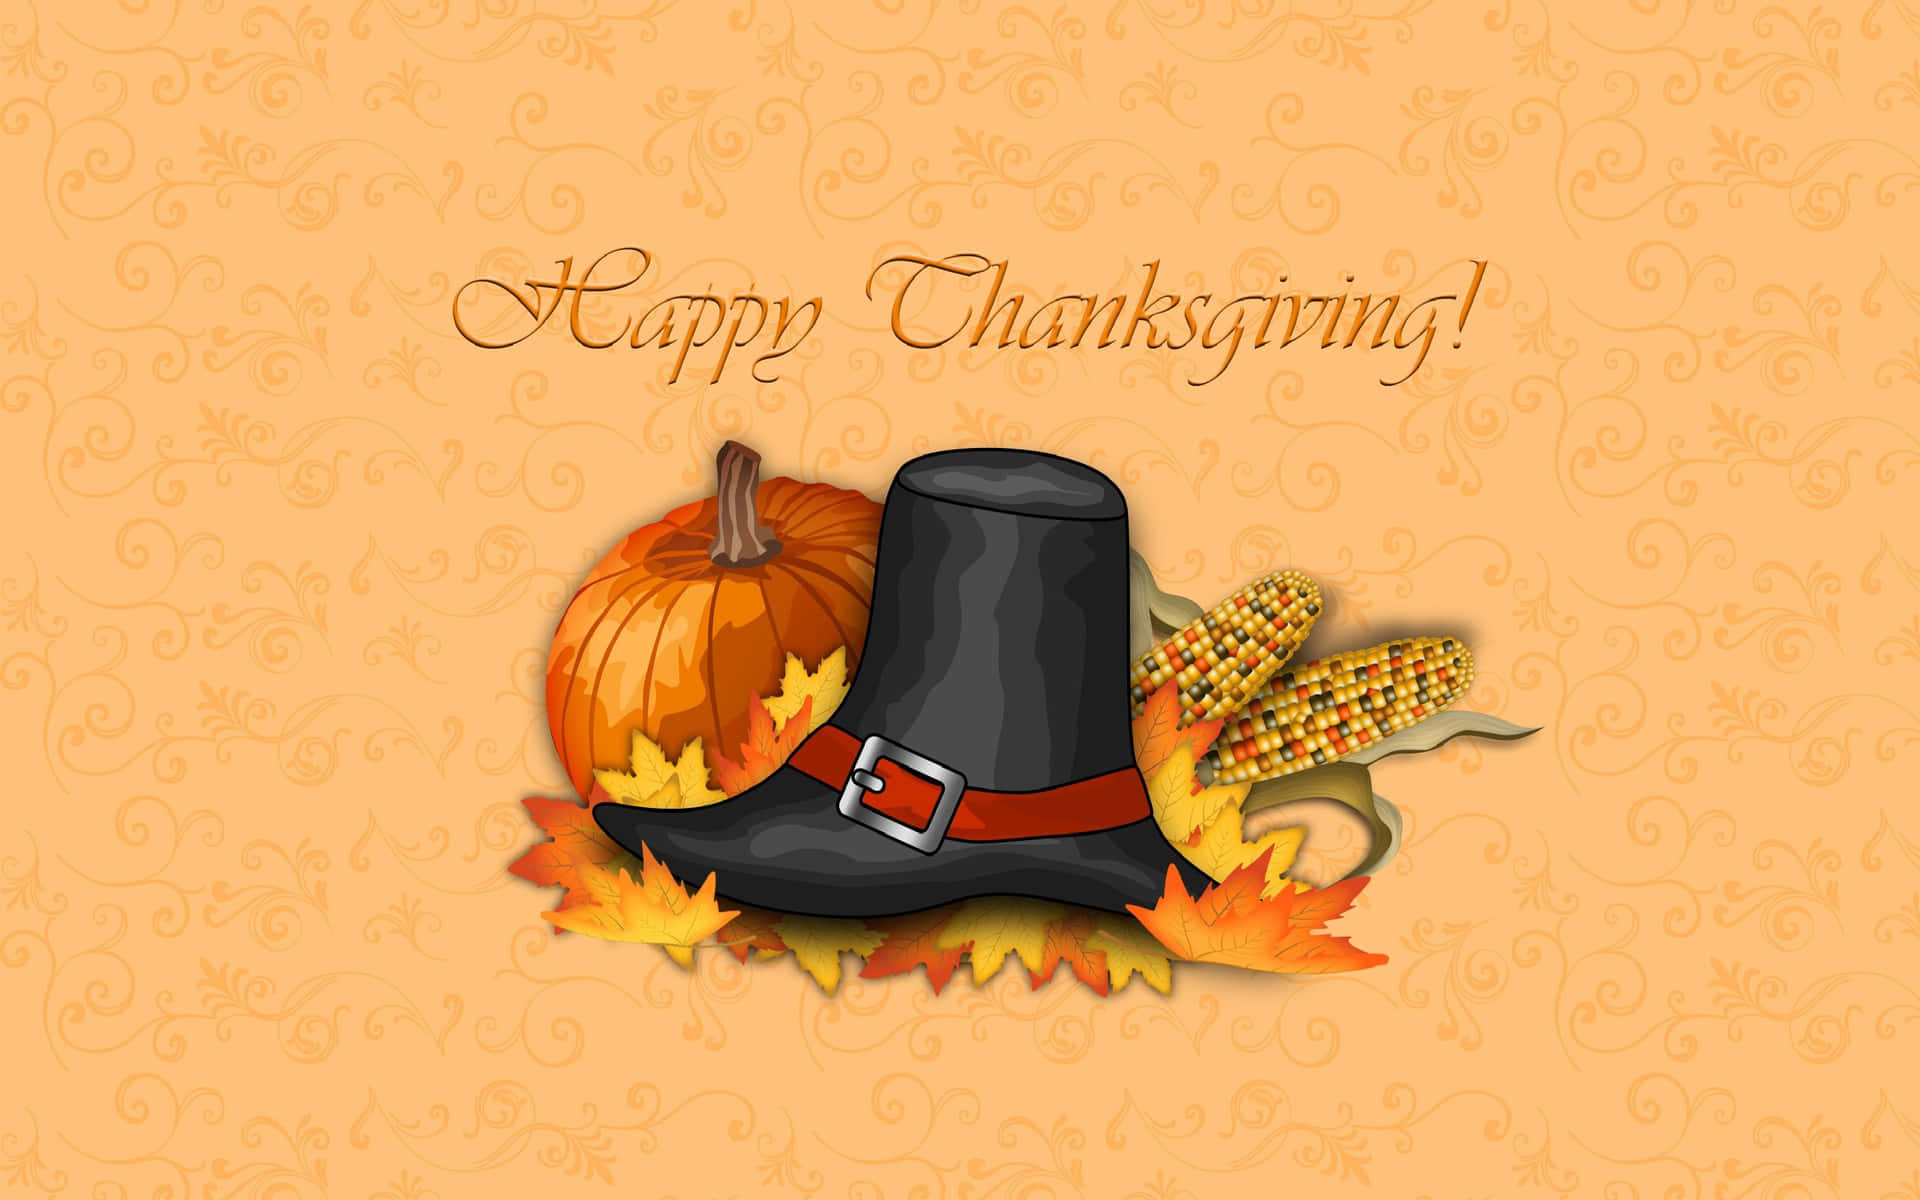 Lados Være Taknemmelige For Alt, Hvad Vi Har Denne Thanksgiving.